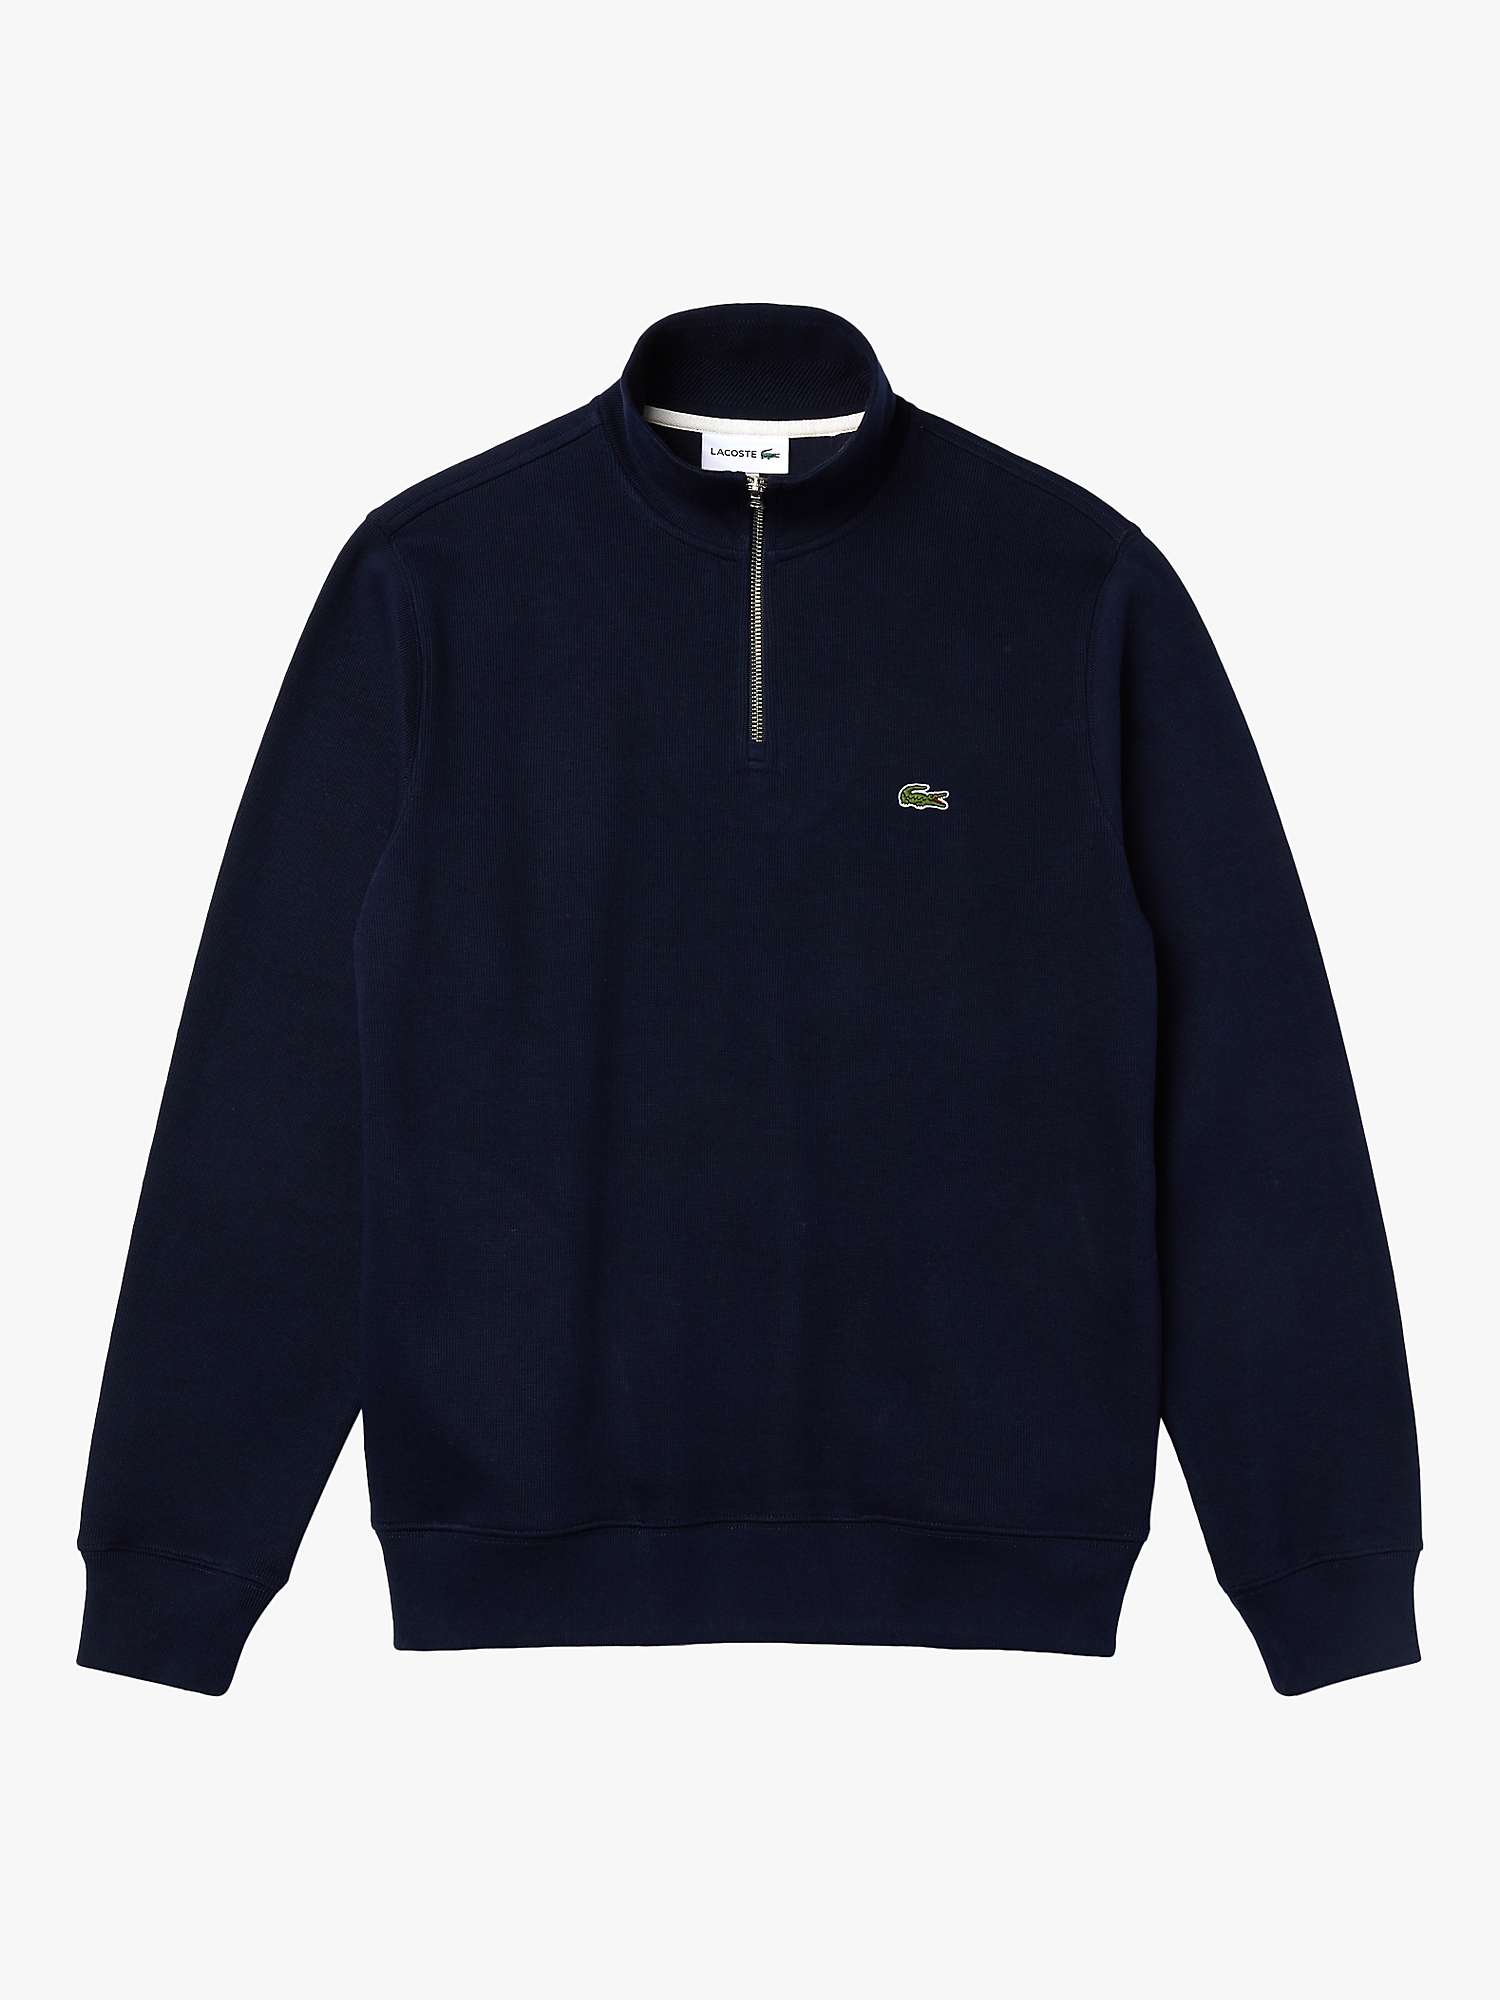 Buy Lacoste Cotton Stand Up Zip Neck Sweatshirt, Navy Online at johnlewis.com